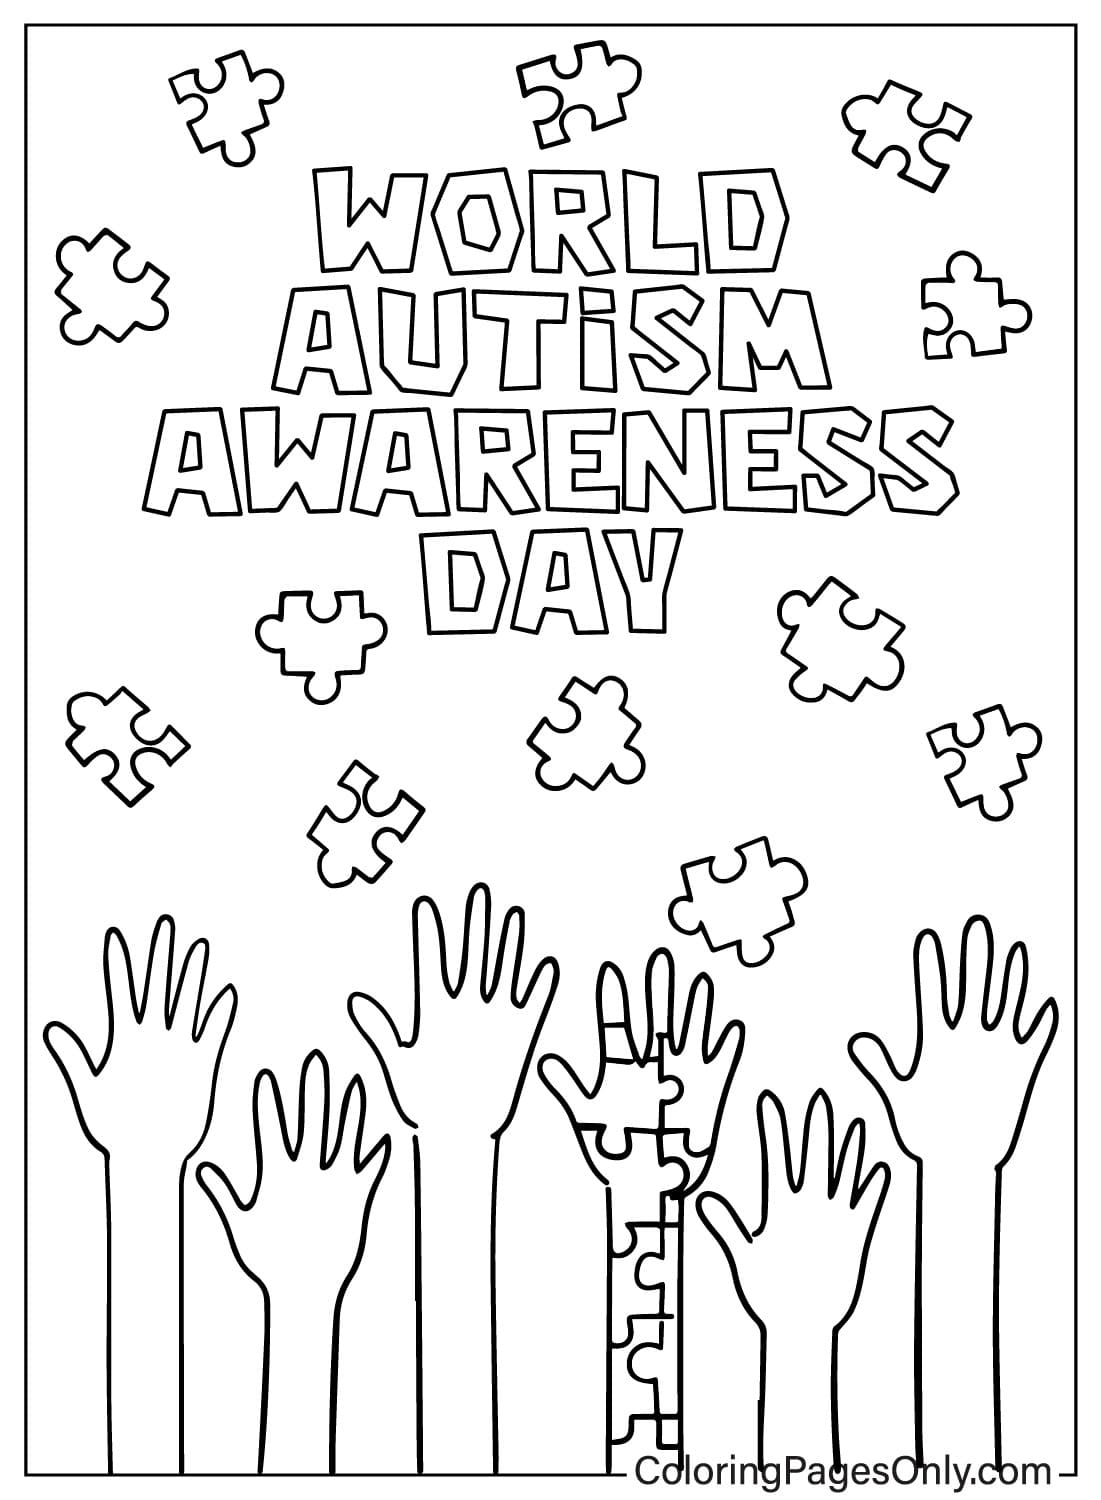 Página para colorear de concientización sobre el autismo JPG del Día Mundial de Concientización sobre el Autismo